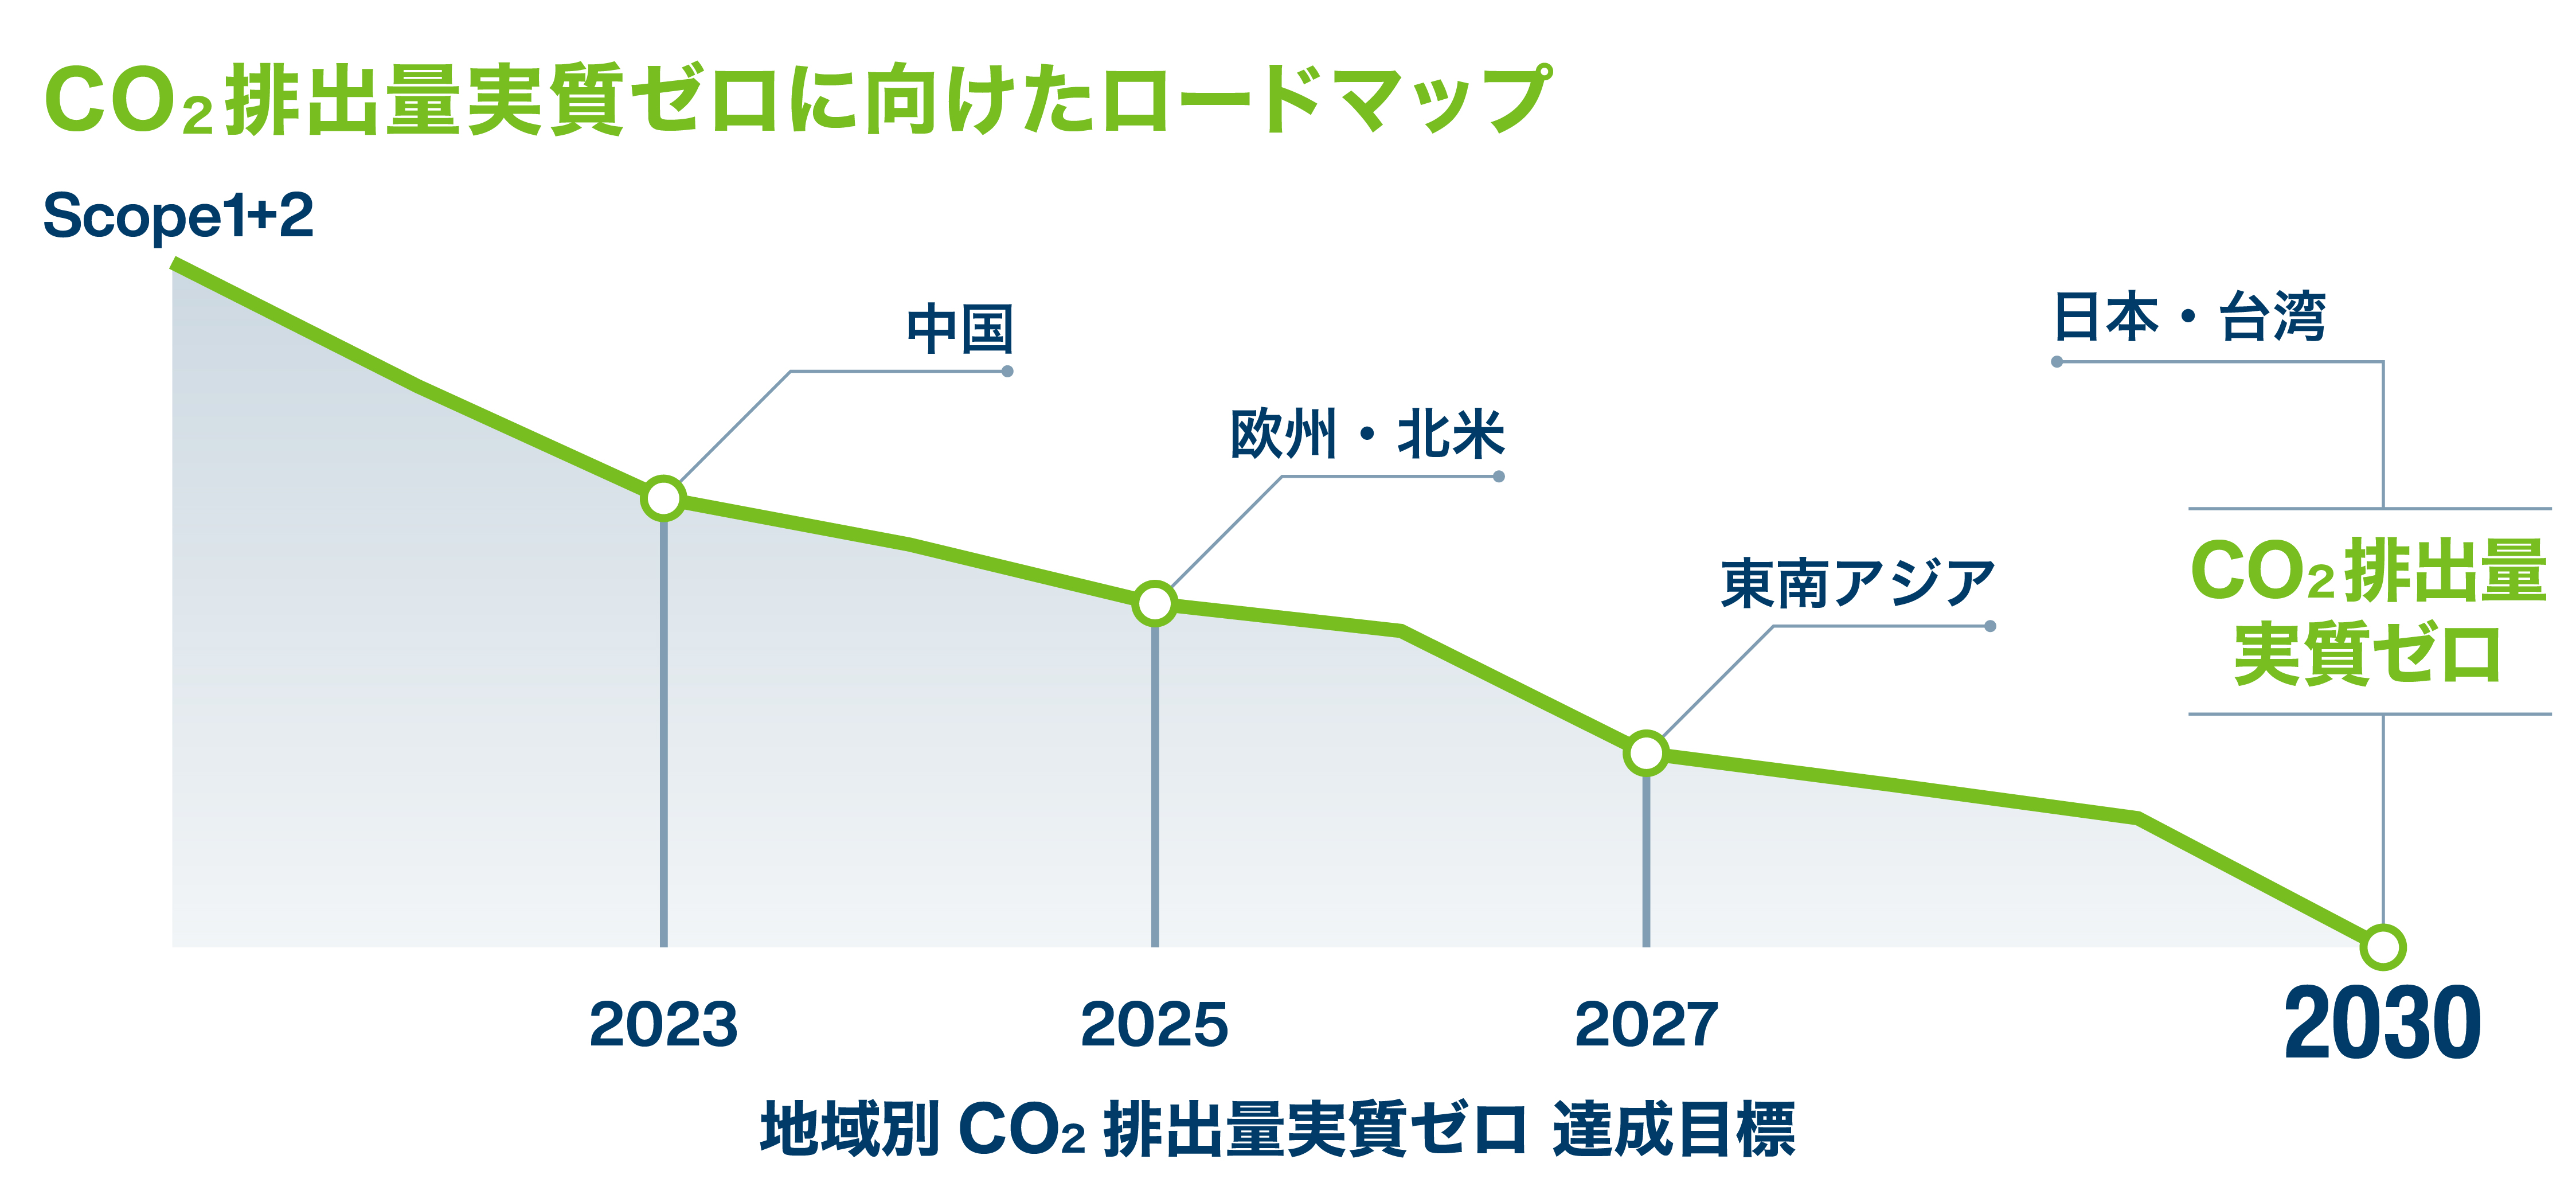 2023年度に中国、2025年度に欧州・北米、2027年度に東南アジア、2030年度に日本・台湾のCO<sub>2</sub>排出量実質ゼロを目指すロードマップをかかげています。